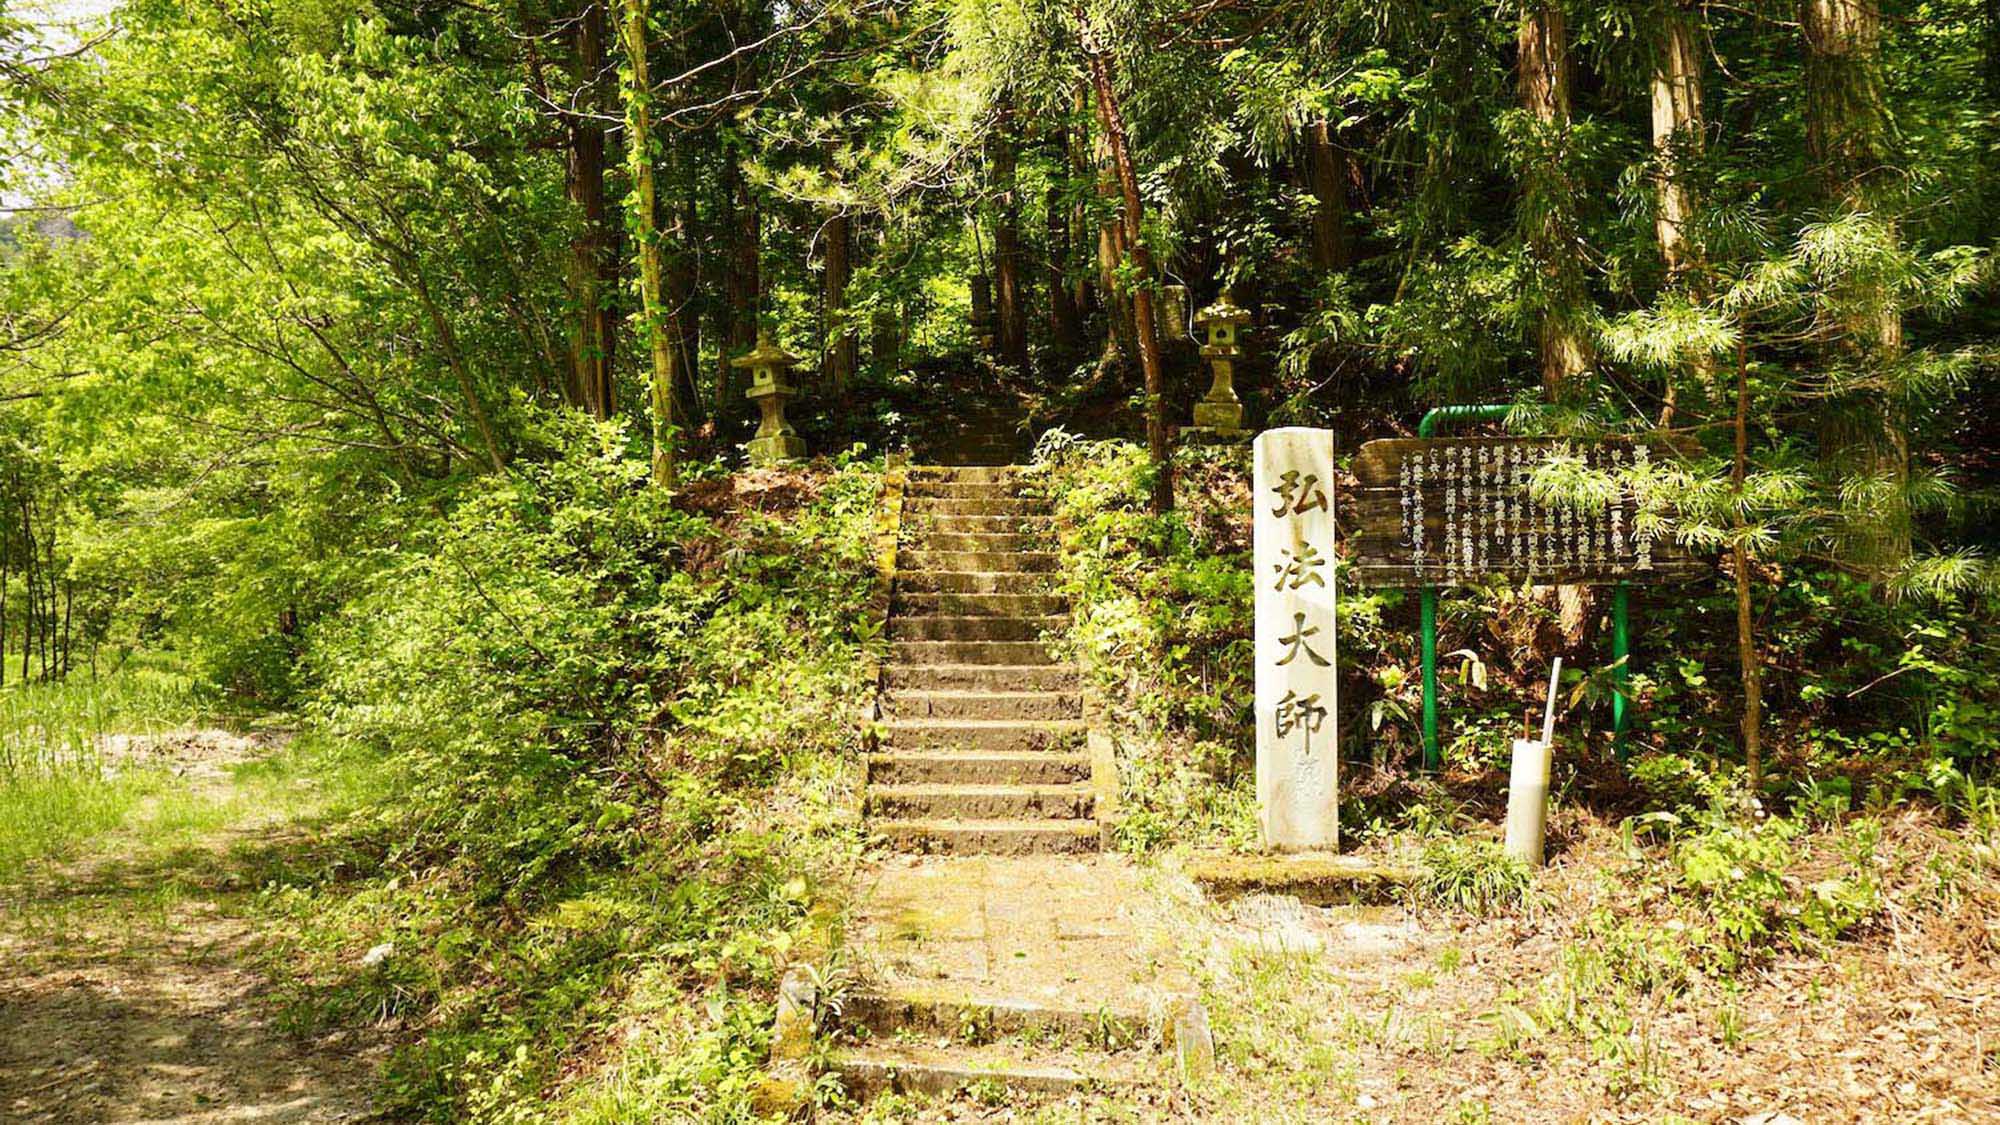 ・弘法岩屋入口。岩の間にあるお寺は圧巻！宿から歩いて行けます。